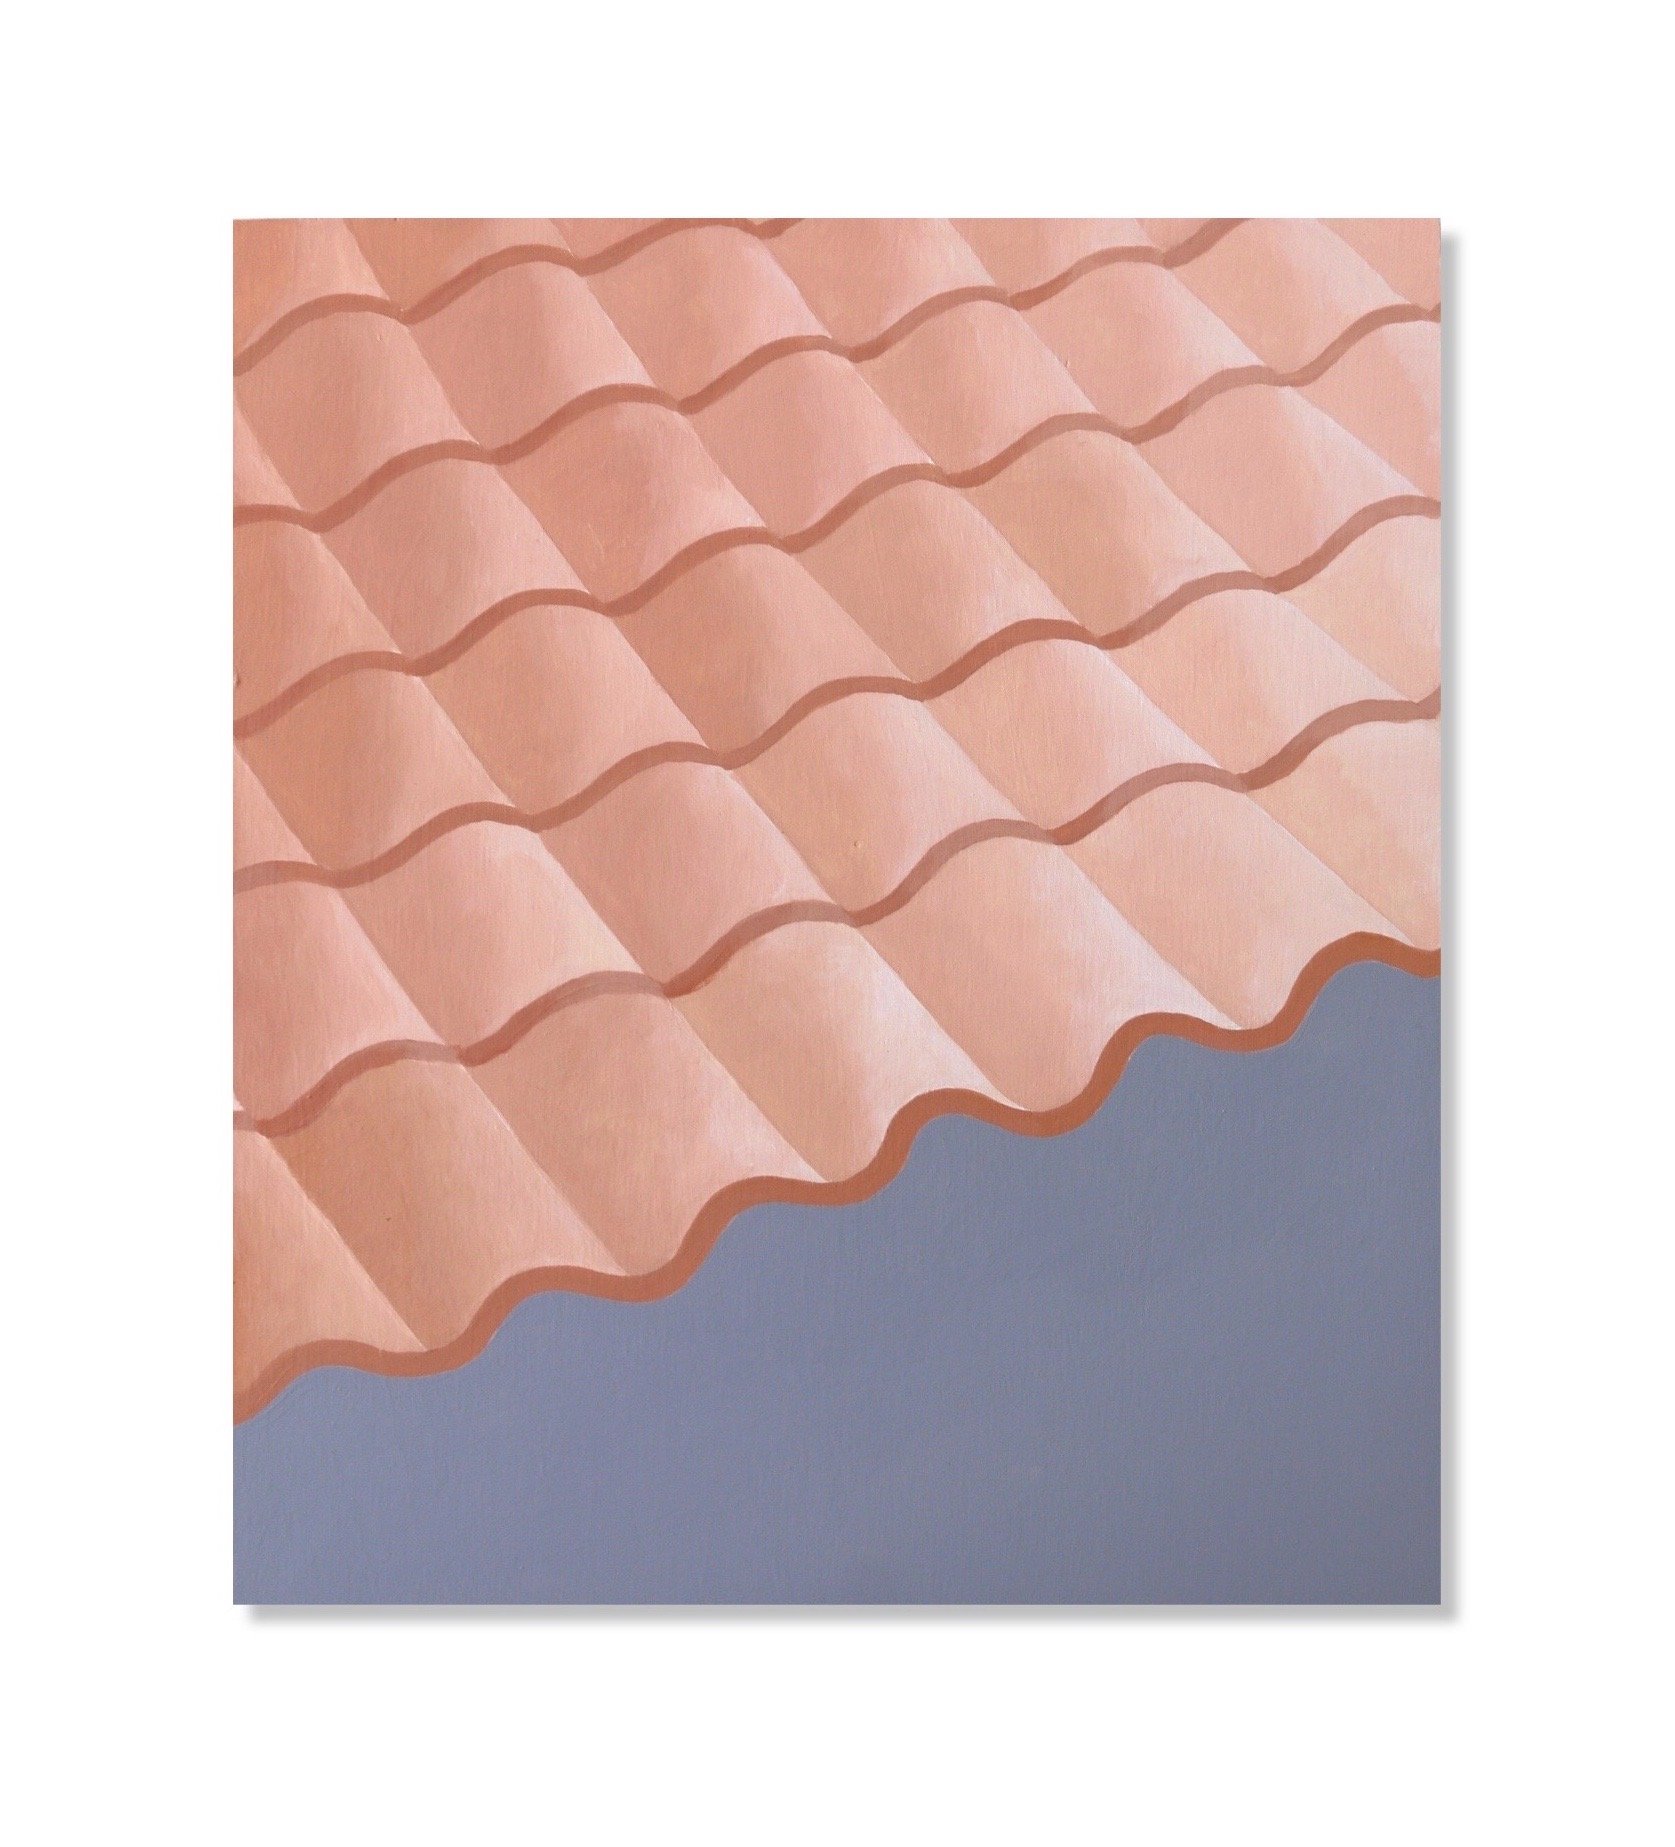  ‘Roof Tiles’, acrylic on wood, 2022 